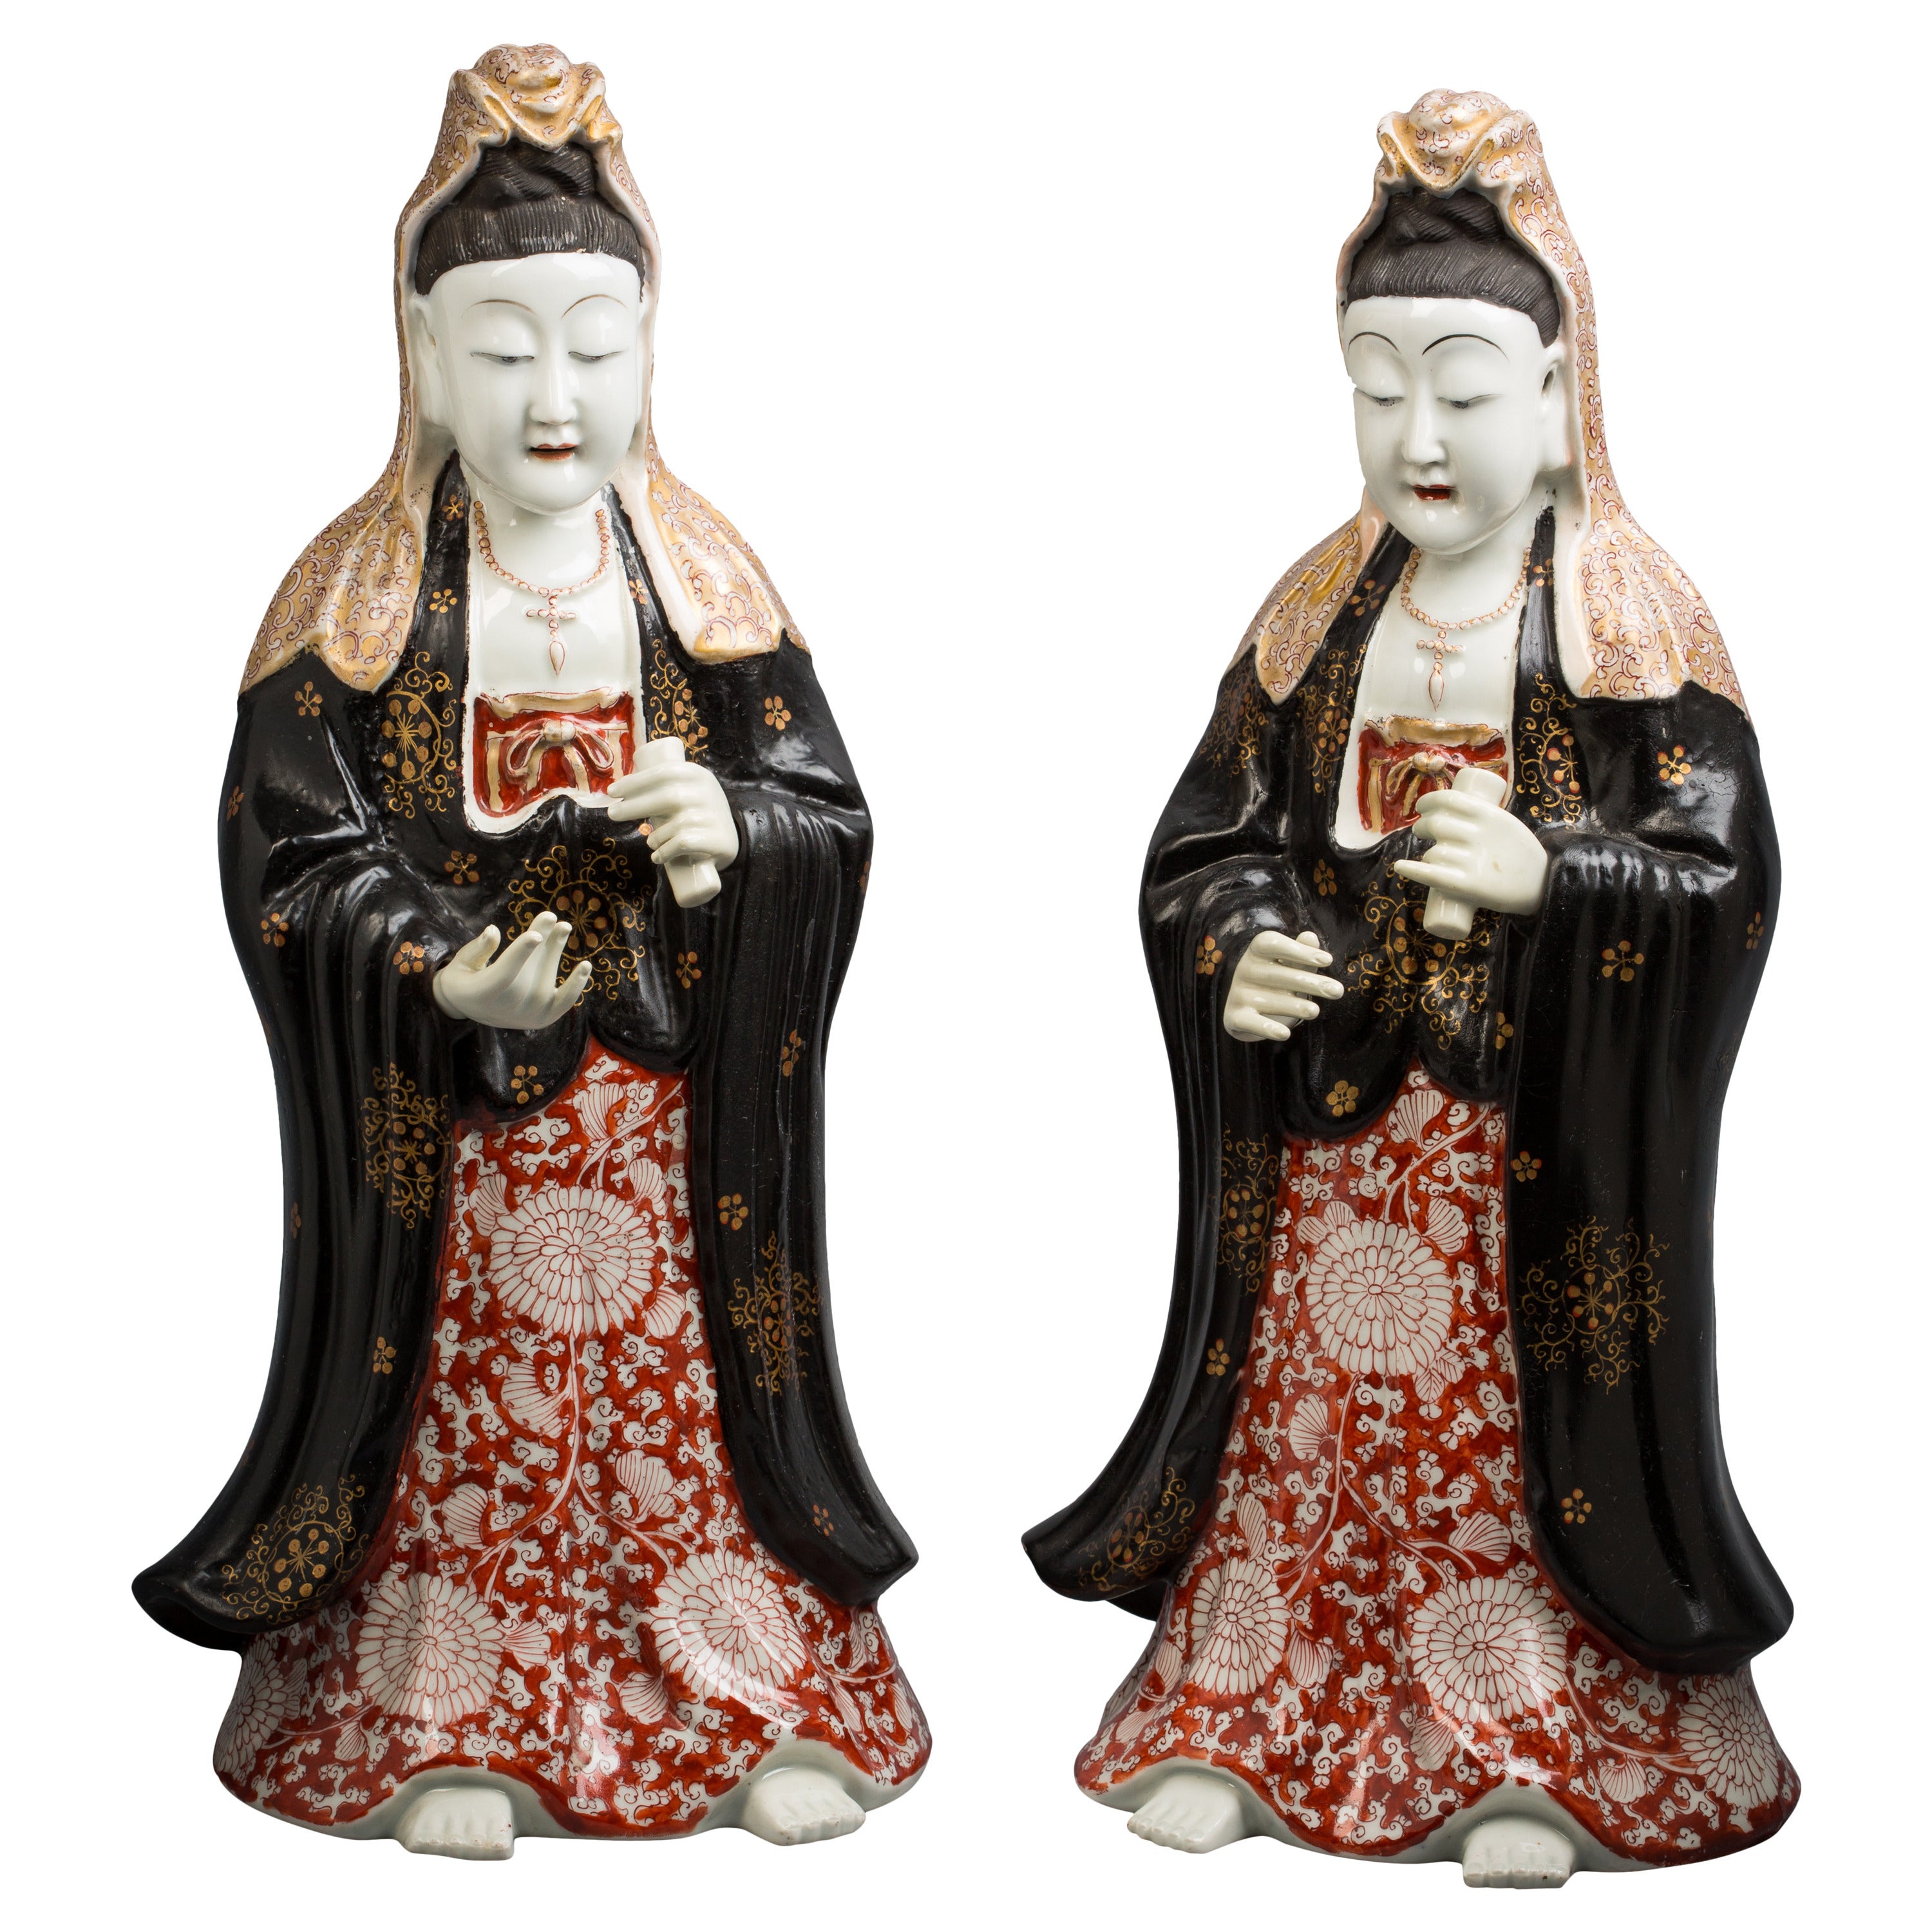 Paire de figurines en porcelaine de style chinoiserie française, vers 1840